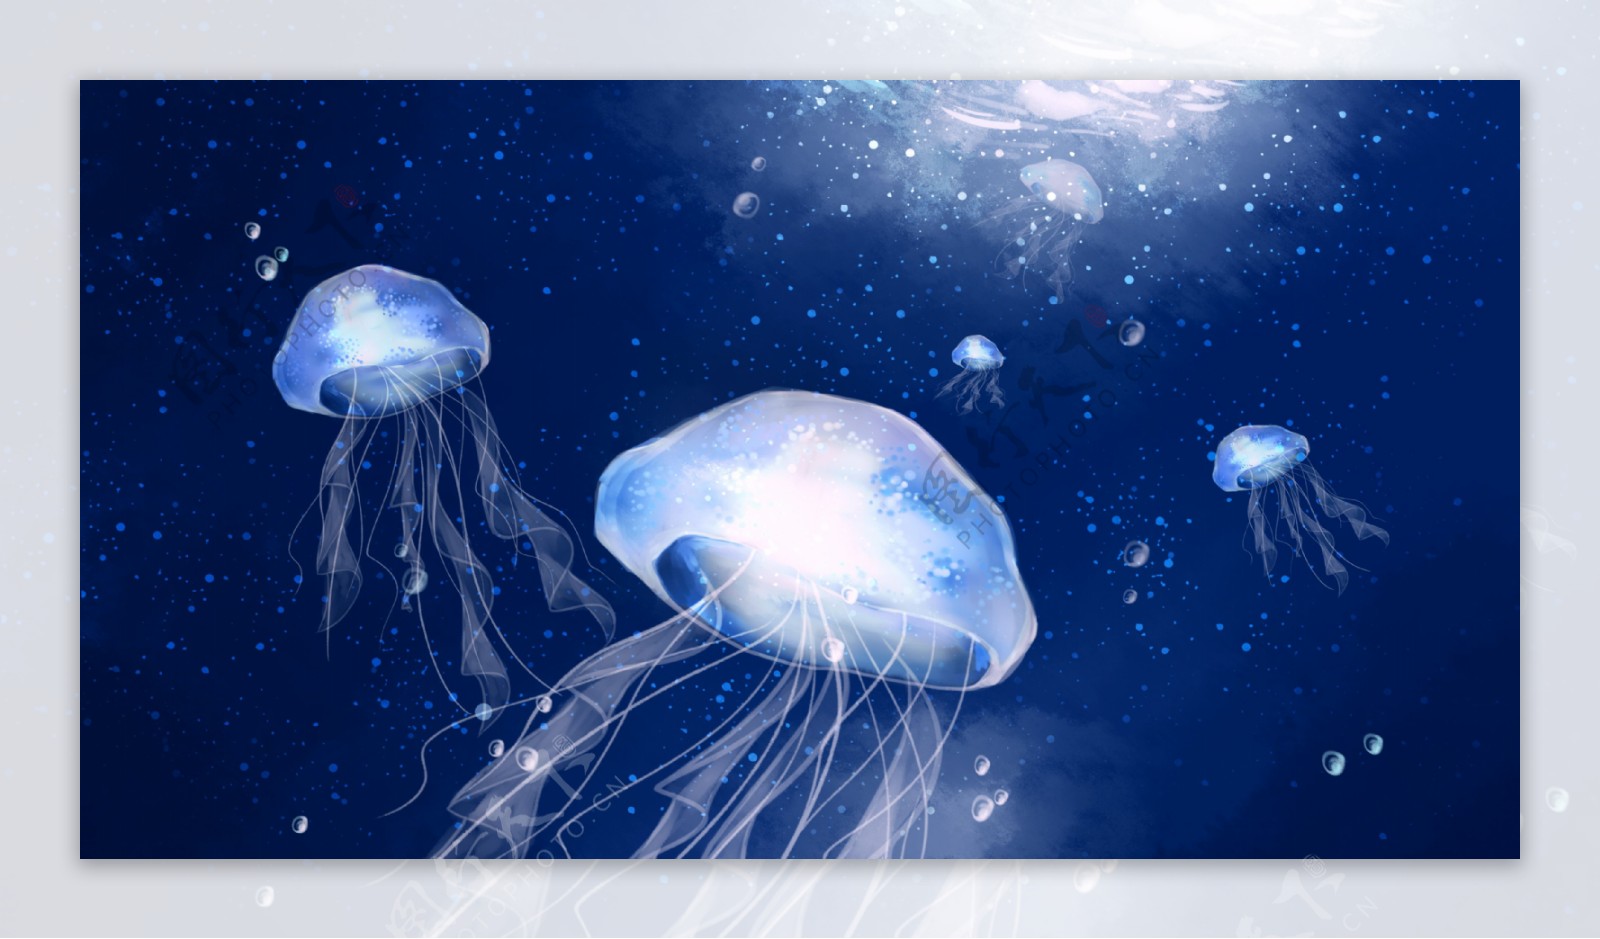 图片素材 : 水下, 海蜇, 蓝色, 刺胞动物, 海洋生物学, 海洋无脊椎动物 5184x3456 - - 114654 - 素材中国, 高清壁纸 - PxHere摄影图库